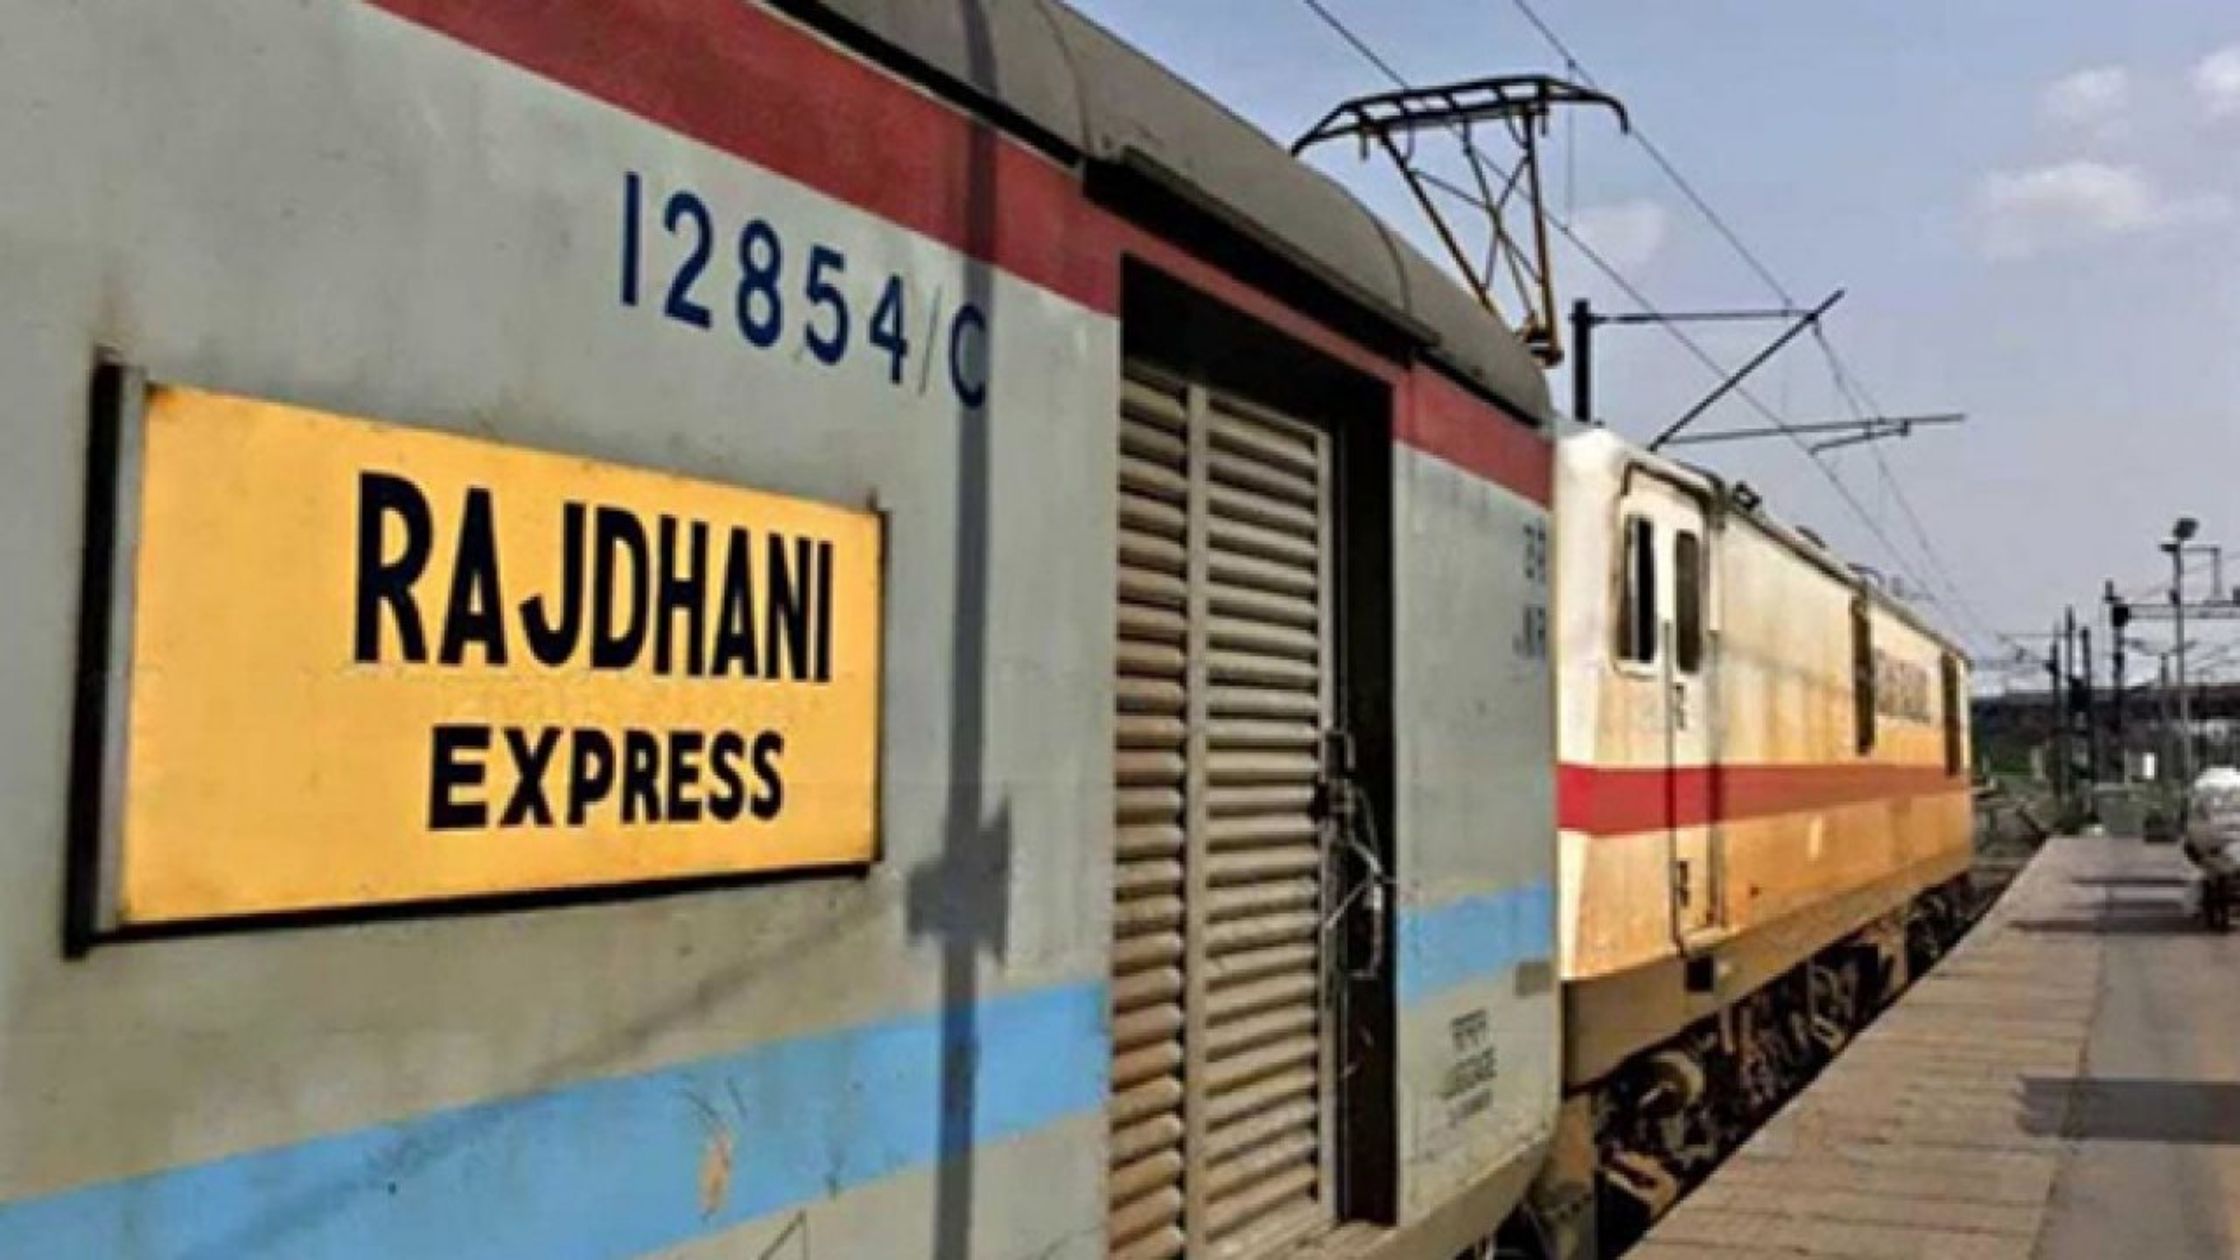 Big decision taken regarding Rajdhani Express train in Bihar